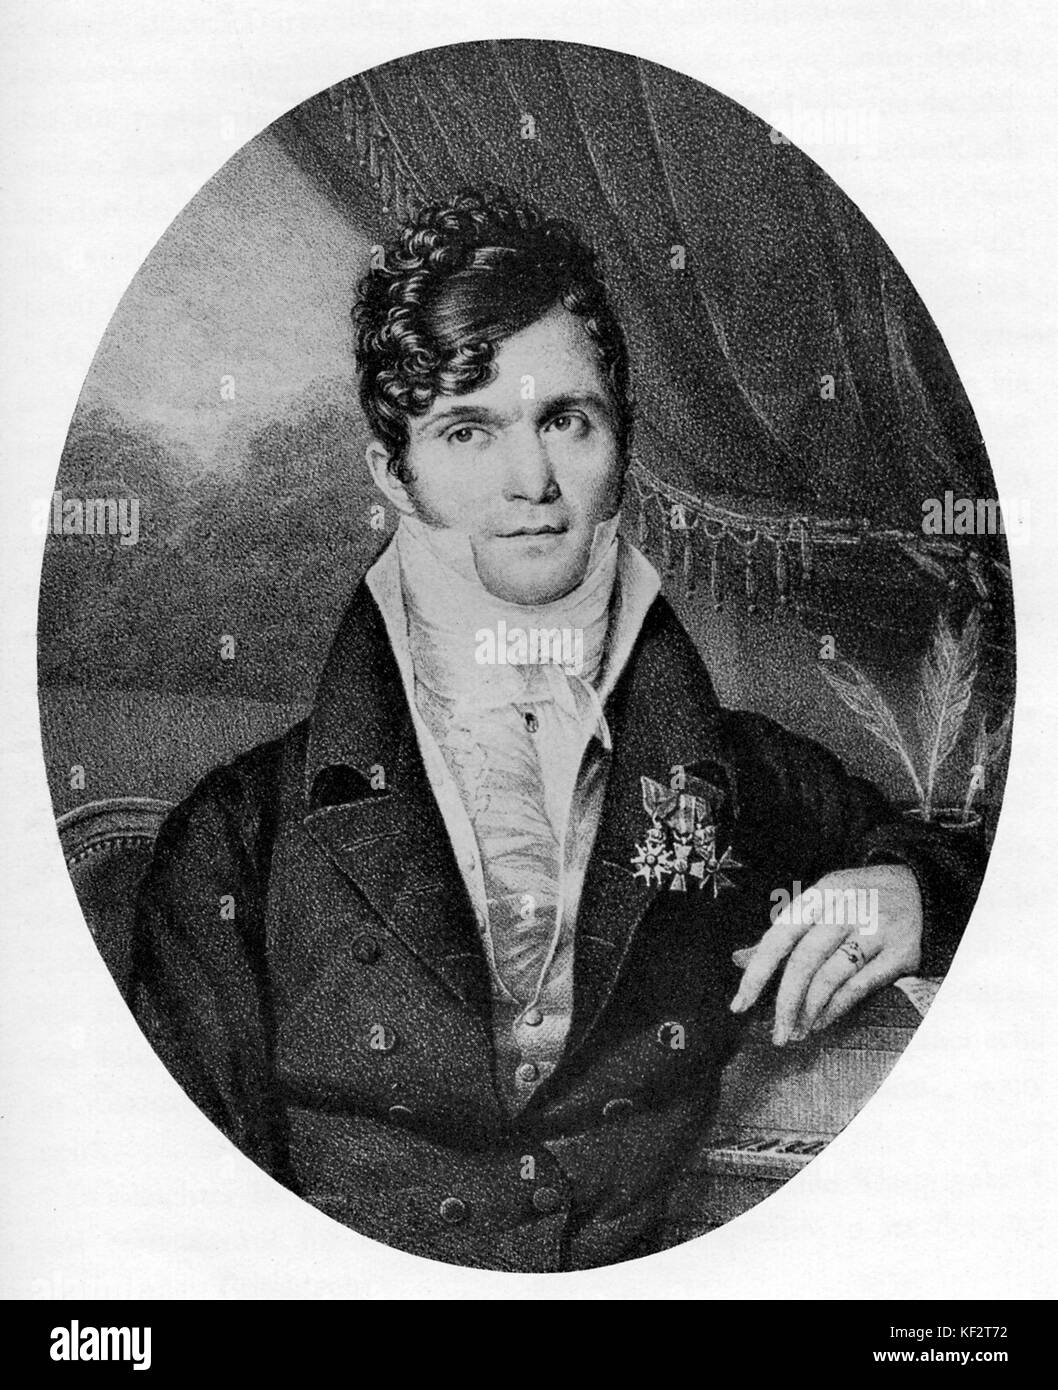 Luigi Gaspare Spontini, compositor de ópera italiana. A partir de una litografía por Jean Guérin. 14 de noviembre de 1774 - 24 de enero de 1851. Foto de stock